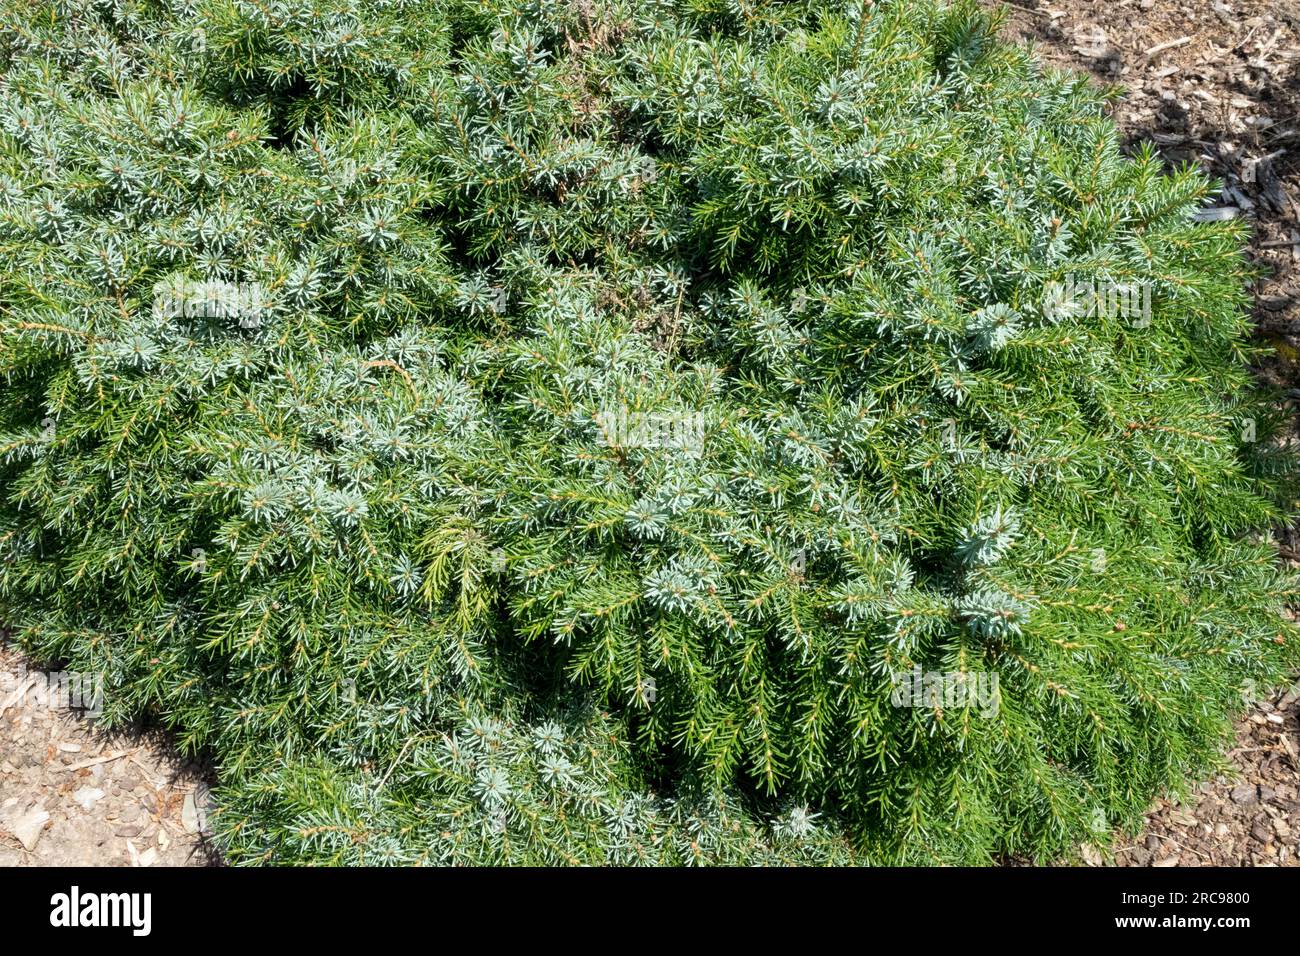 Abete rosso serbo, Picea omorika "Treblitzsch", cultivar basso, da sferico a piramidale, molto compatto Foto Stock